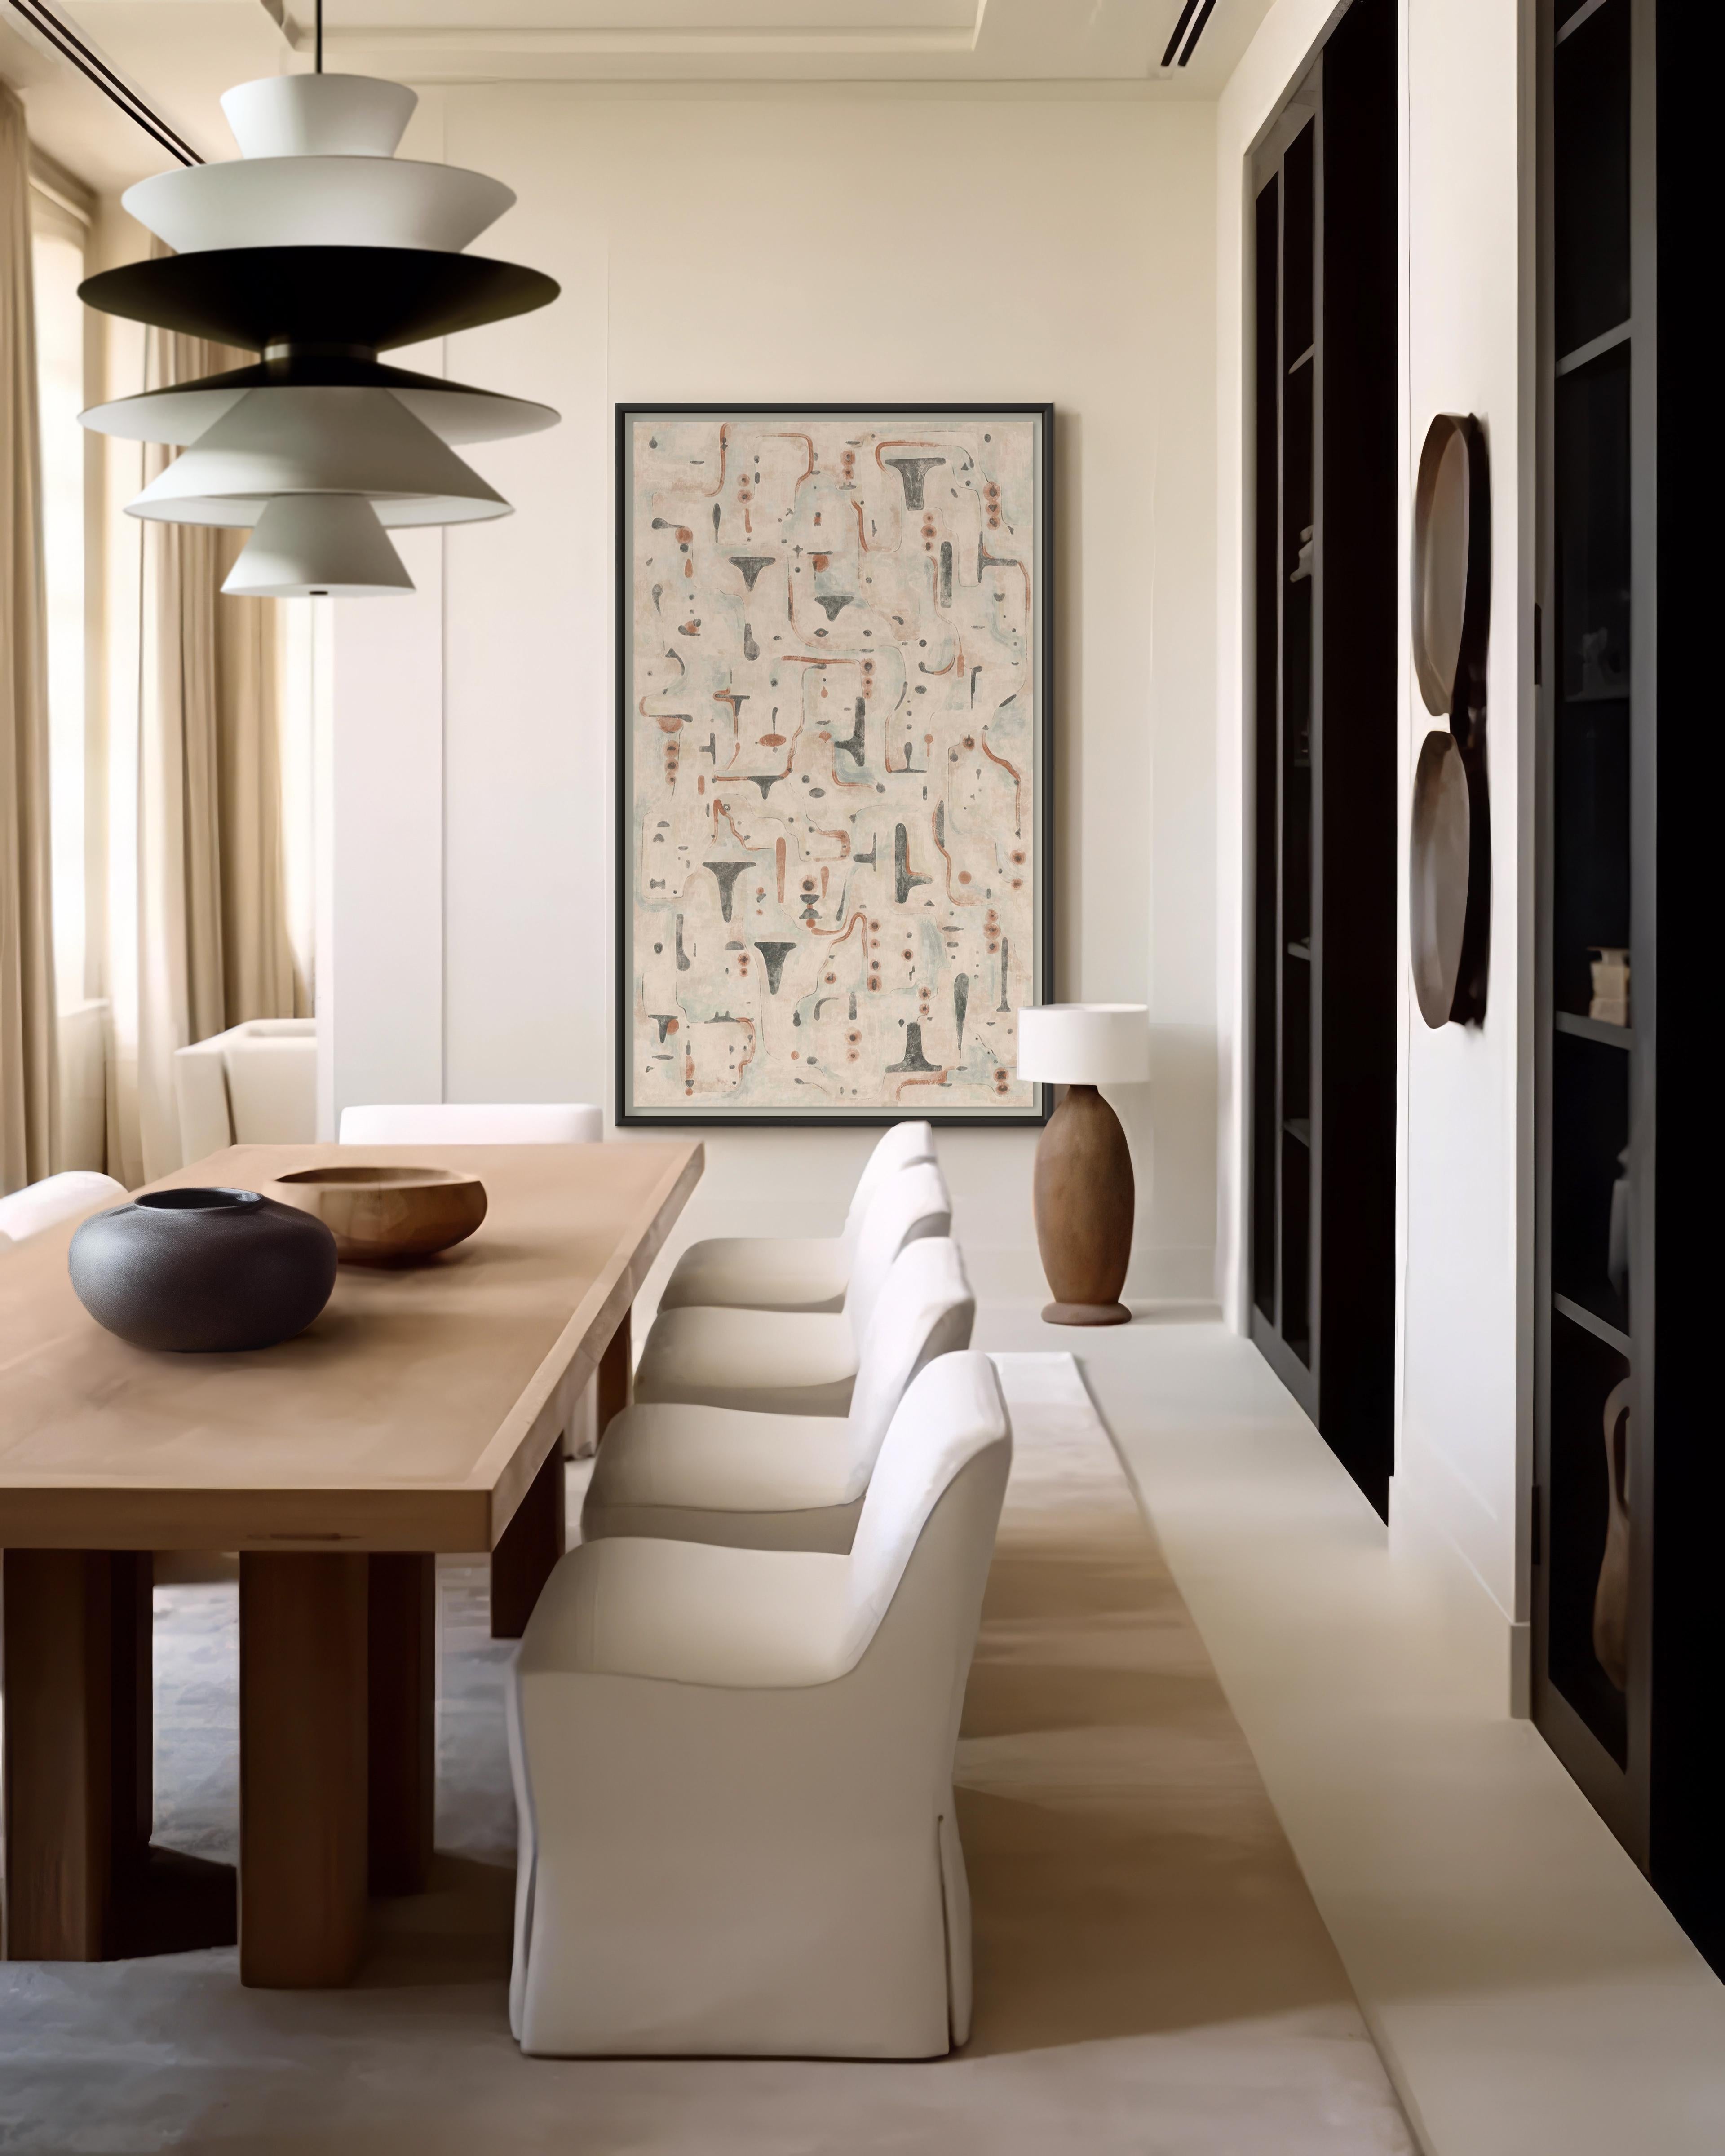 Issue du Studio de Christiane Lemieux et de la série des paysages à la gouache, au pastel et au fusain, La Fougère est un abstrait chaleureux. Créée comme une pièce polyvalente, elle peut être montée verticalement ou horizontalement. Il s'agit d'une